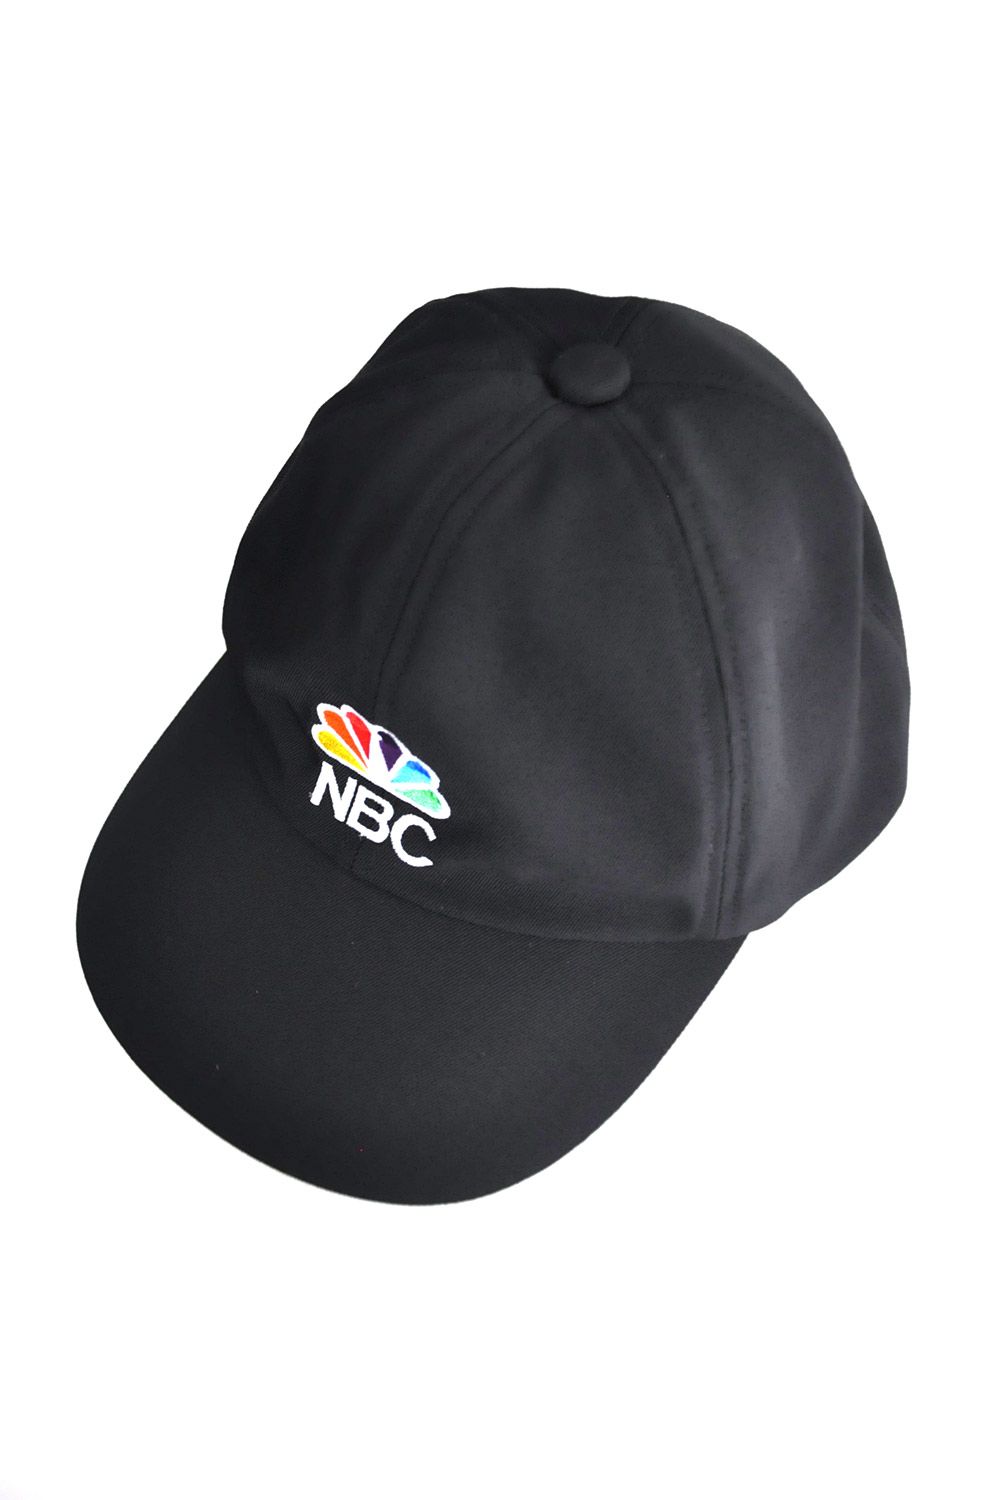 COMESANDGOES NBC CAP